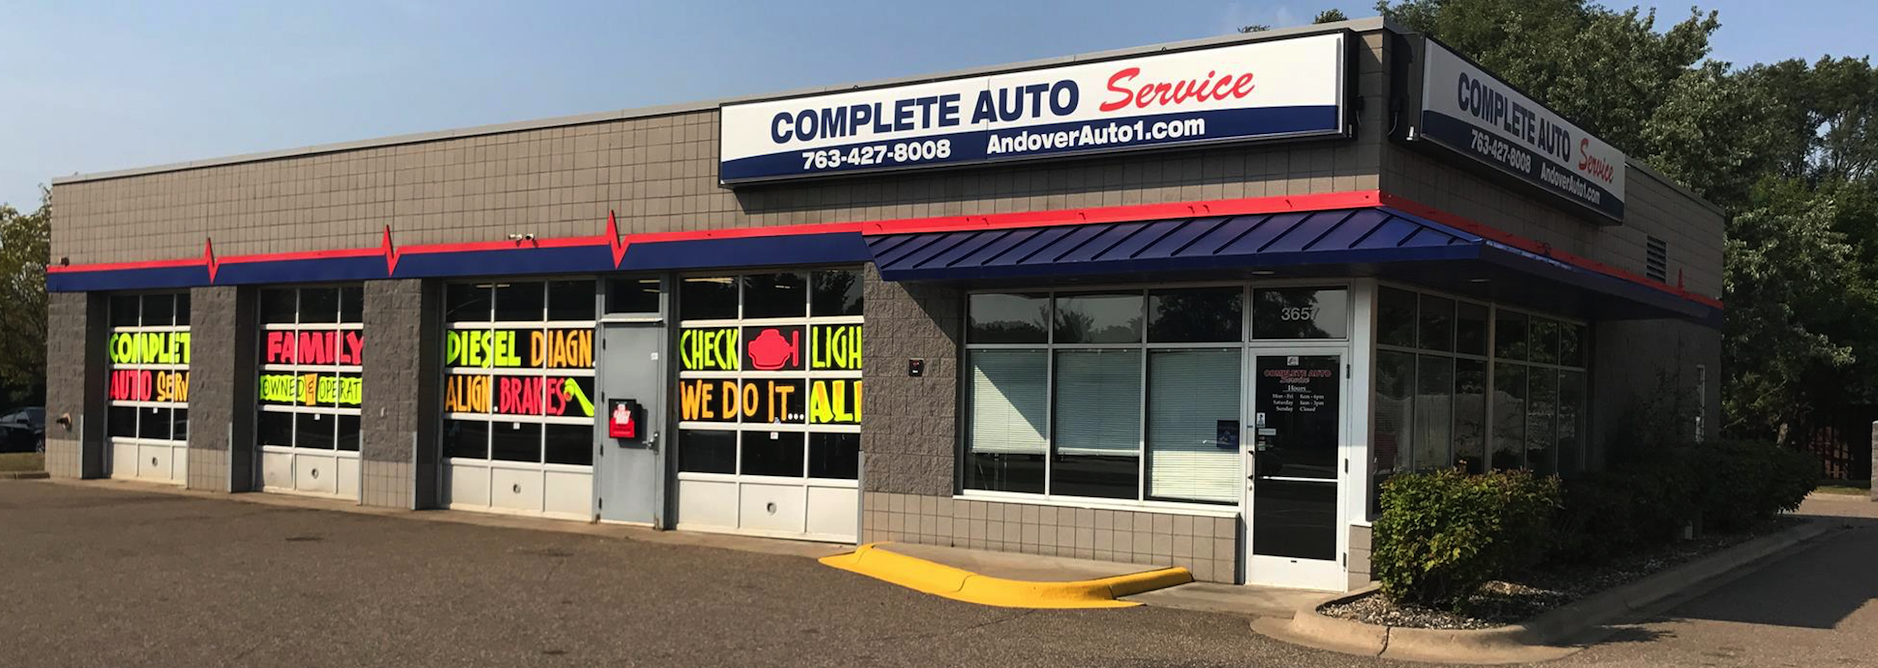 Complete Auto Service | Andover, MN: Home